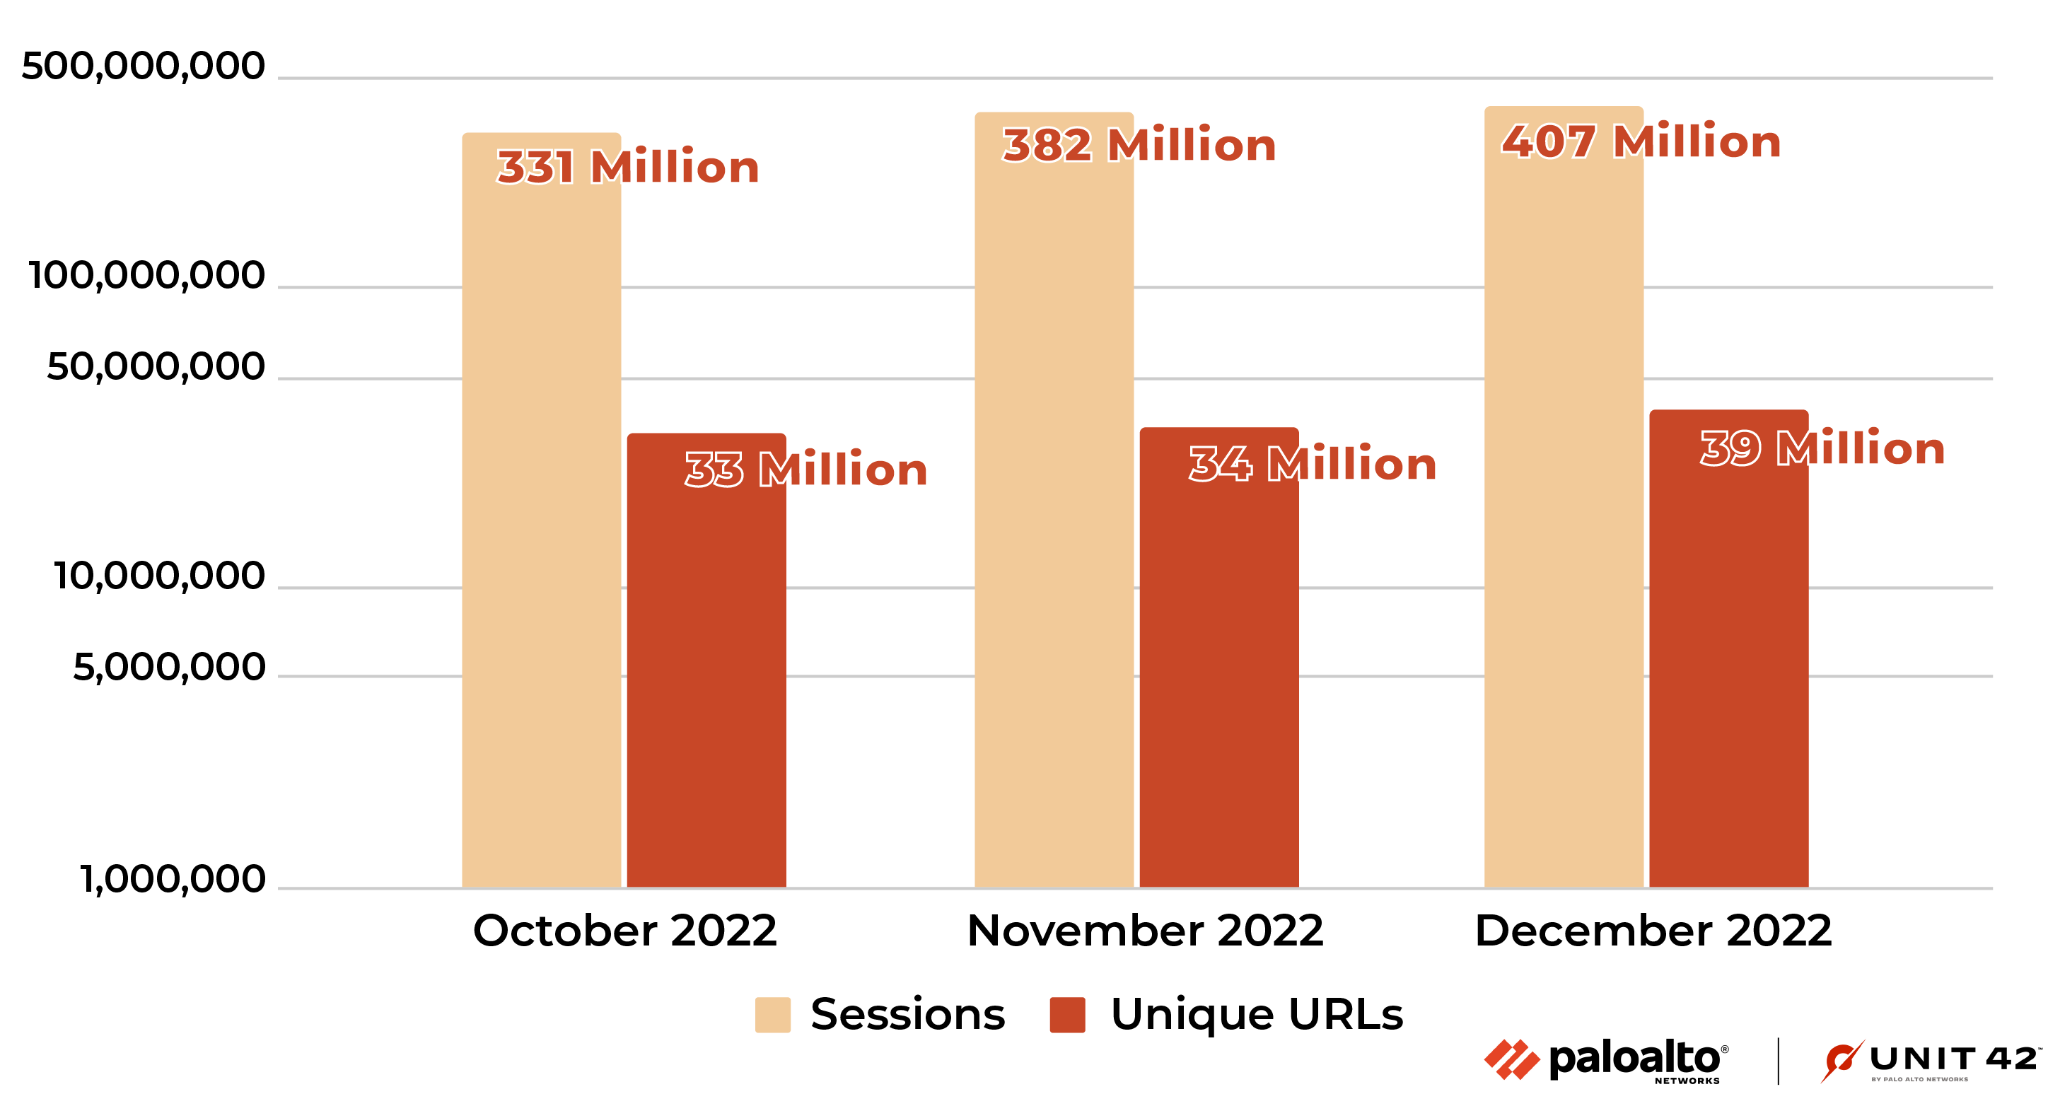 画像7は2022年10月から12月までの悪性HTTP/HTTPSのURLセッション数を示したグラフです。一意なURL数と、それらURLへの総セッション数の月ごとの増減を示しています。もっともセッション数が多いのは2022年12月の4億700万回です。